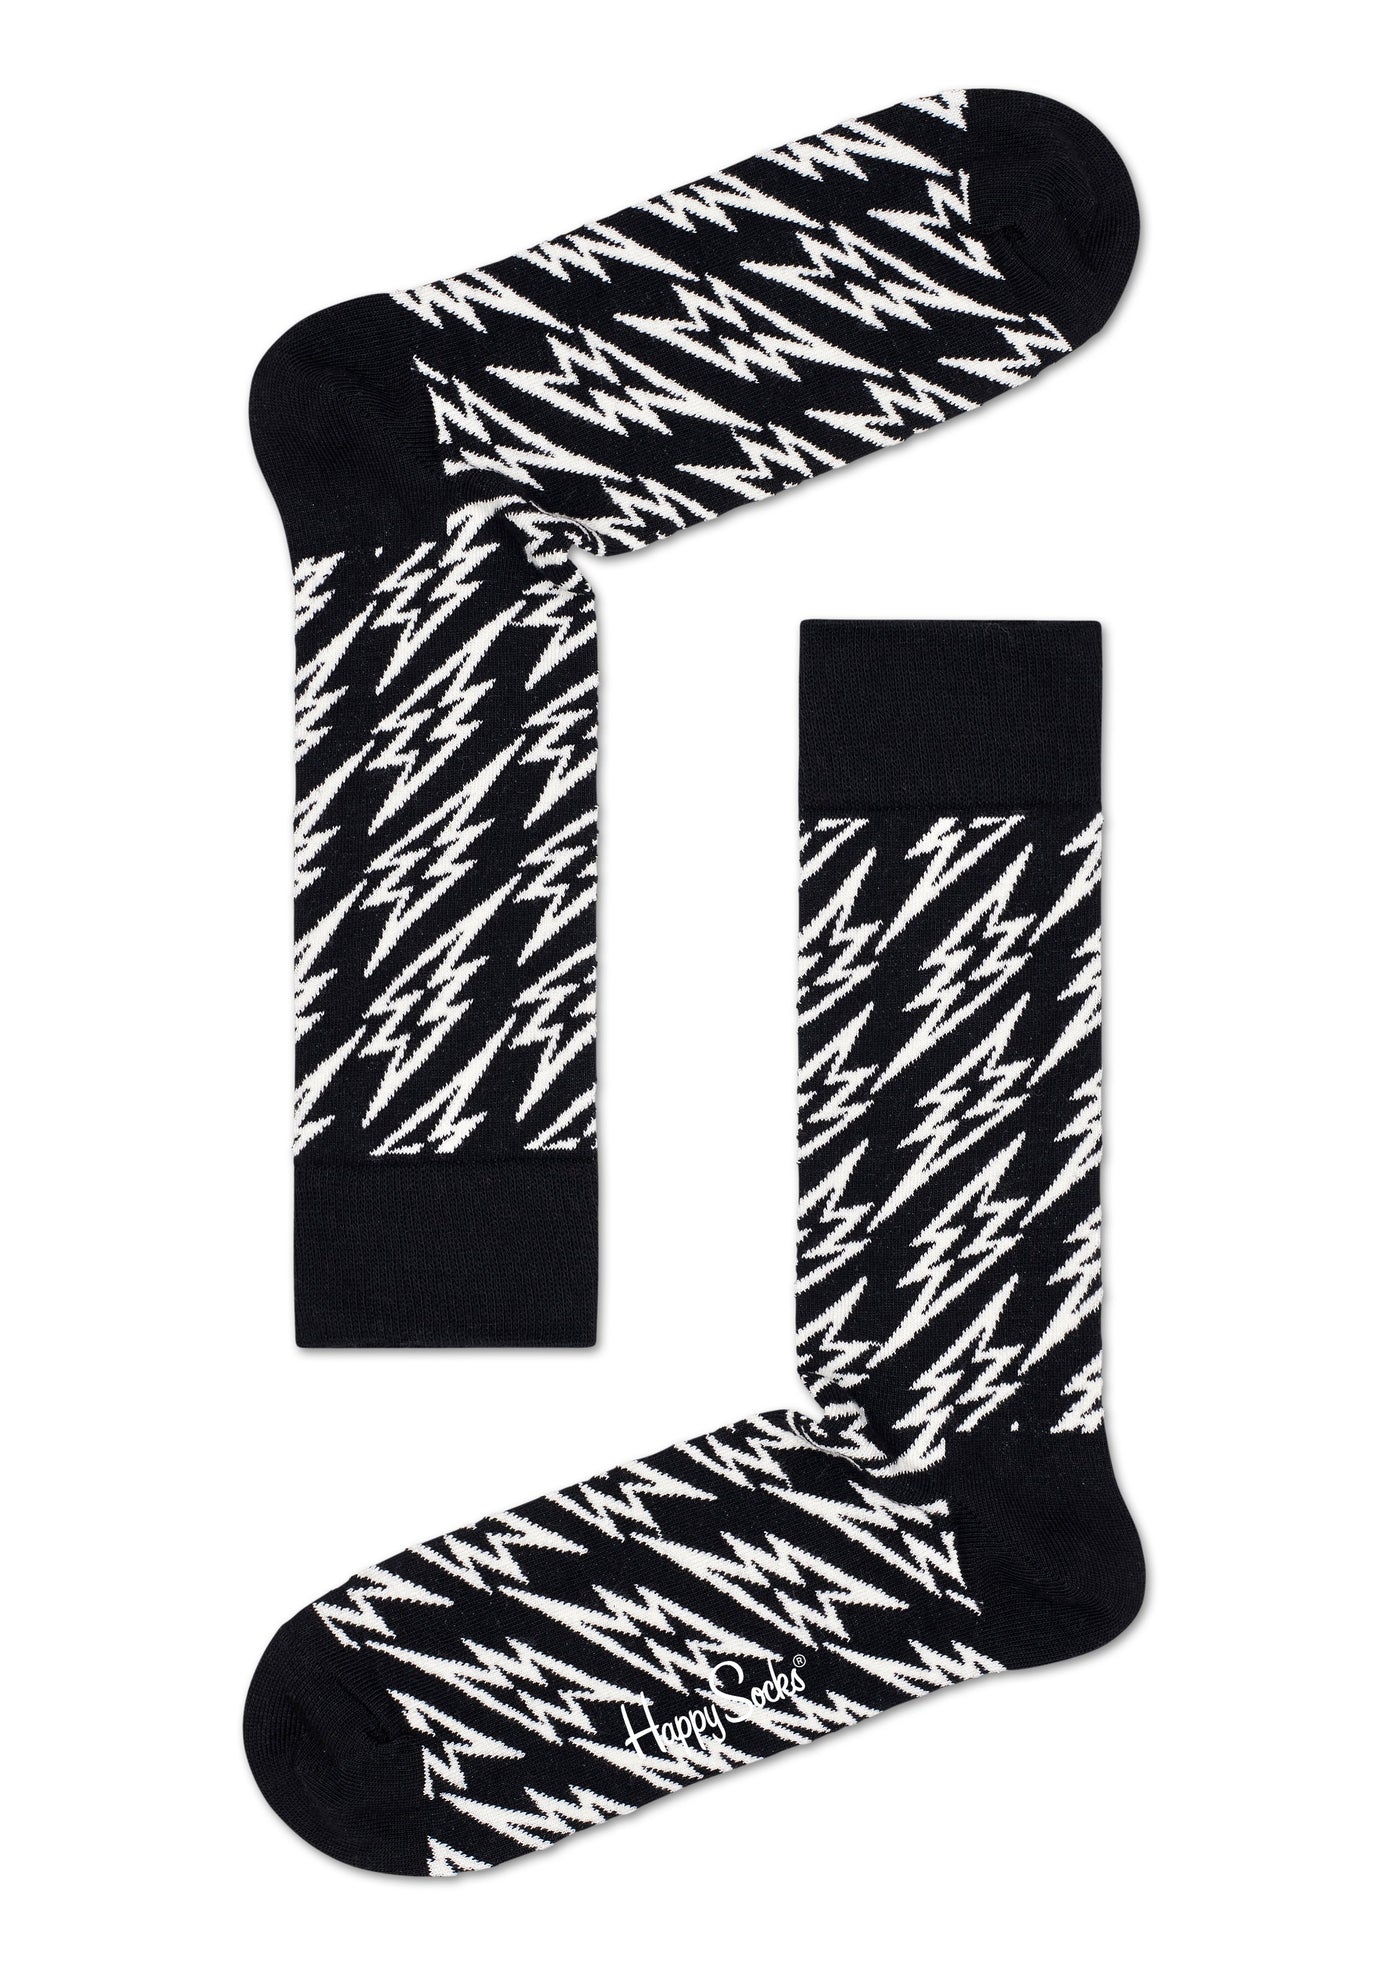 זוג גרביים צבעוניות עם הדפס שחור לבן